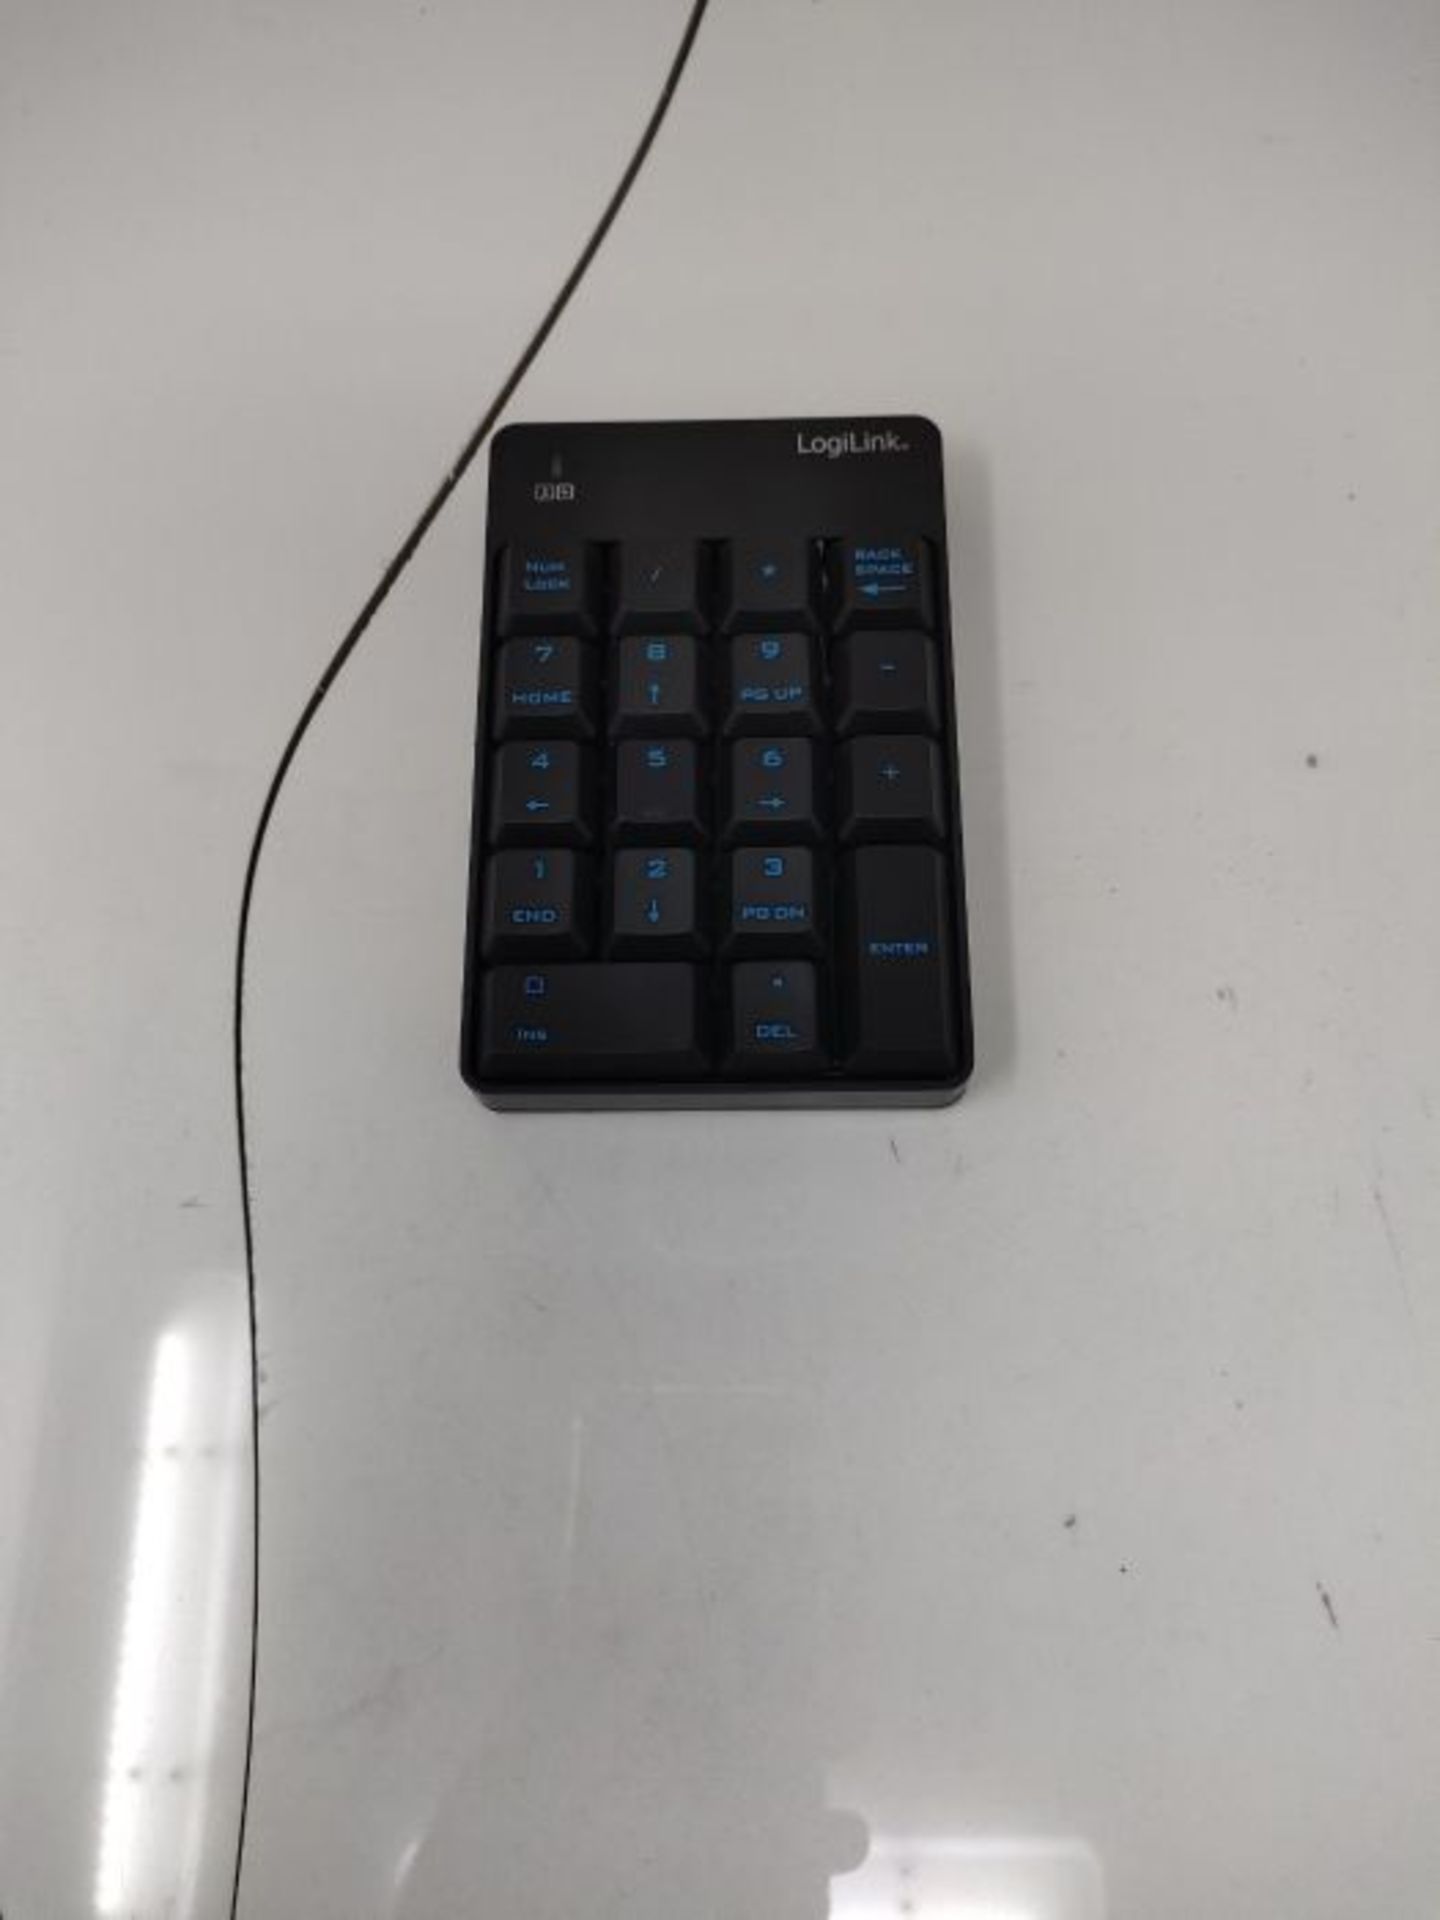 LogiLink ID0120 Wireless Numeric Keypad with 18 Keys - Image 3 of 3